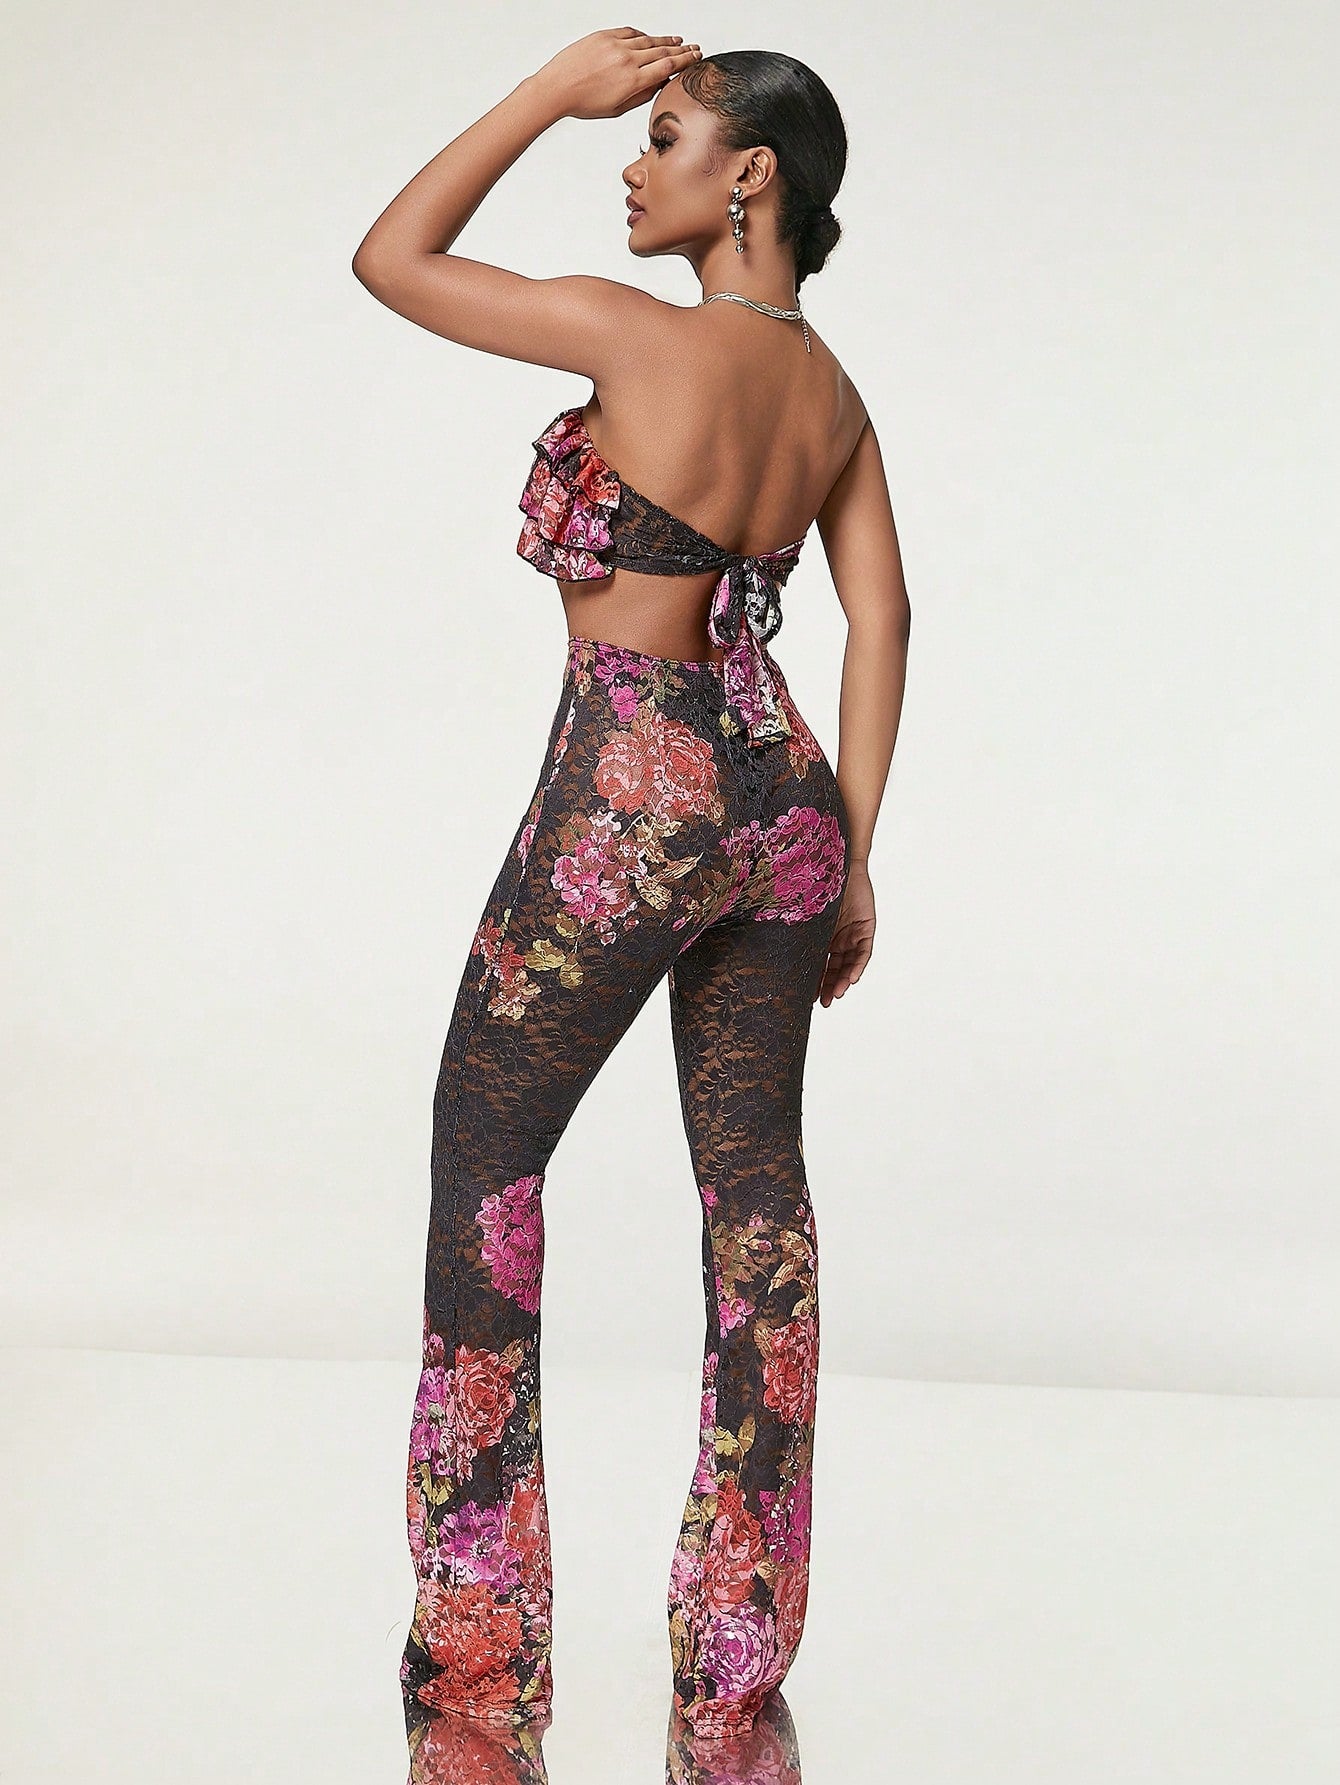 Effortless Elegance: Floral Print Strapless Top & Flare Leg Pants Set